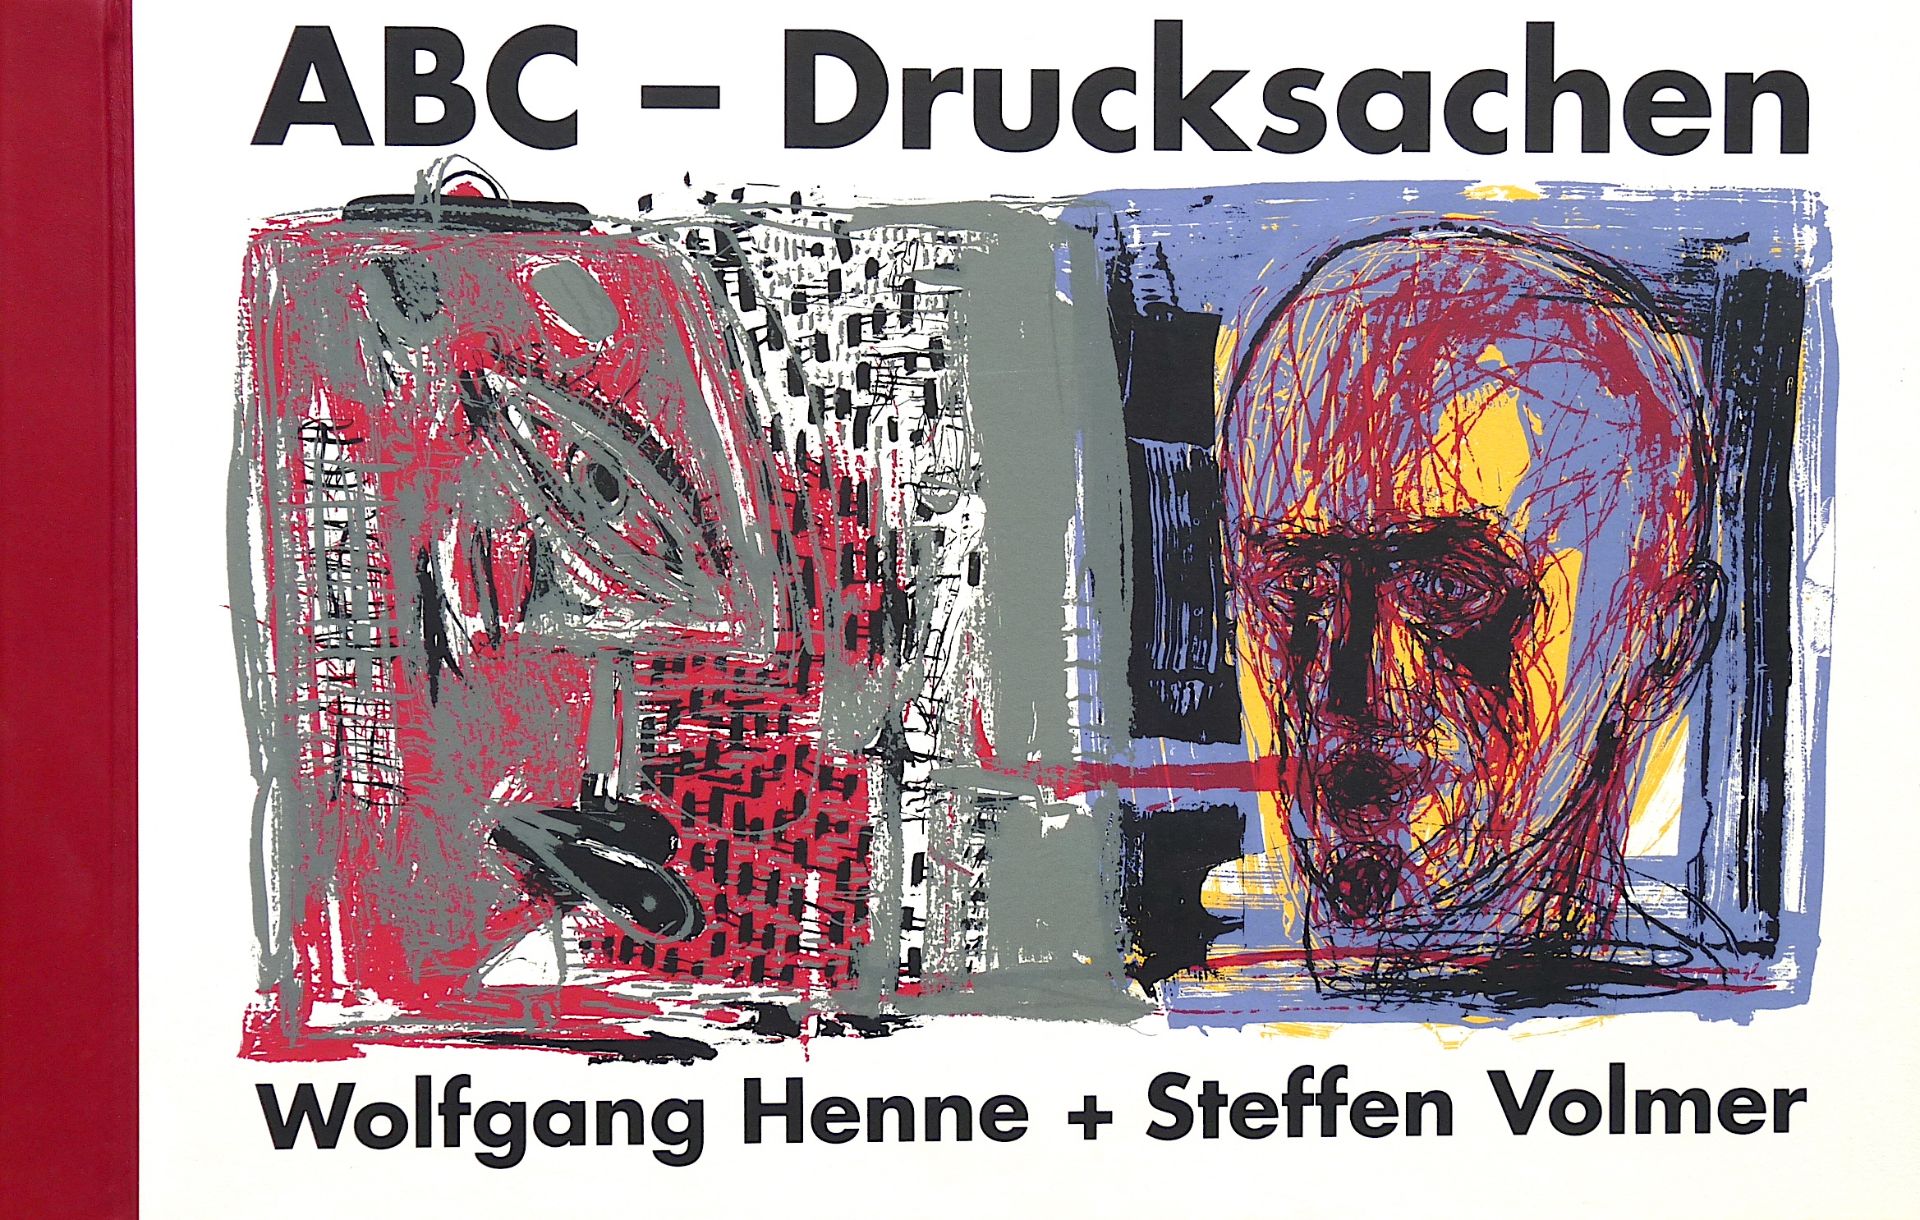 HENNE, WOLFGANG +, VOLMER, STEFFEN: "ABC-Drucksachen", 1993